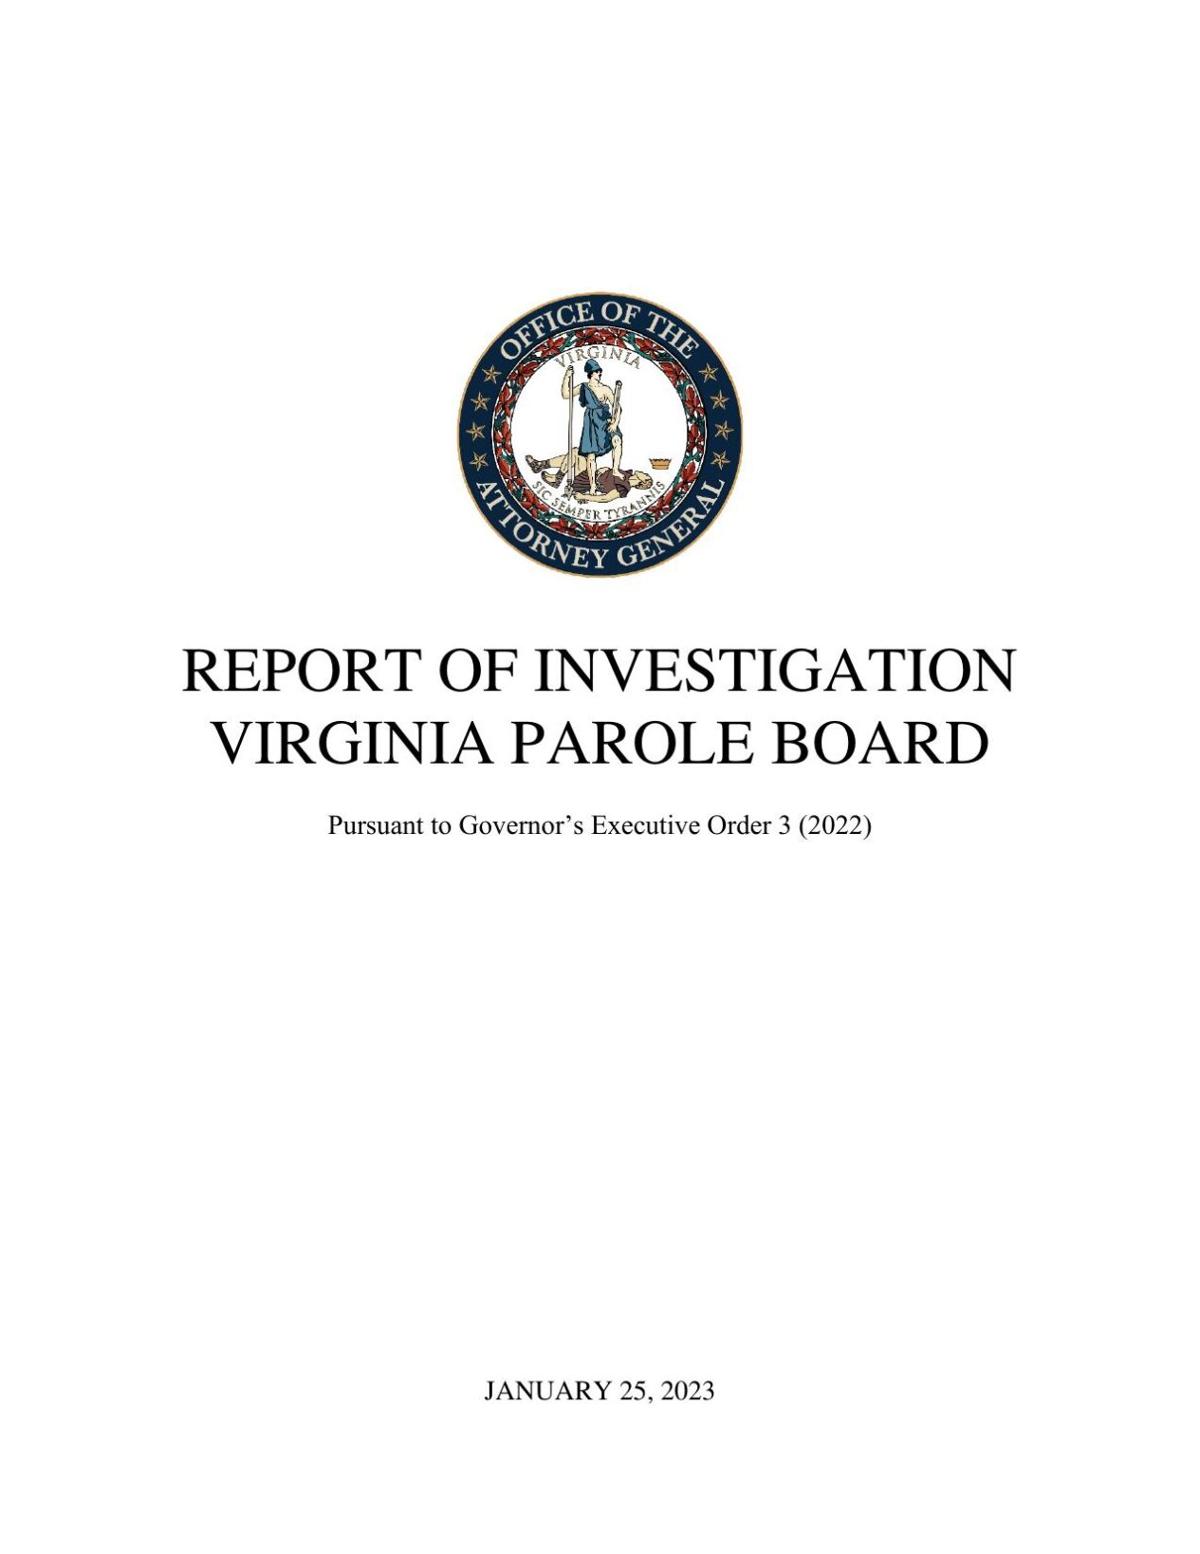 Parole Board investigation